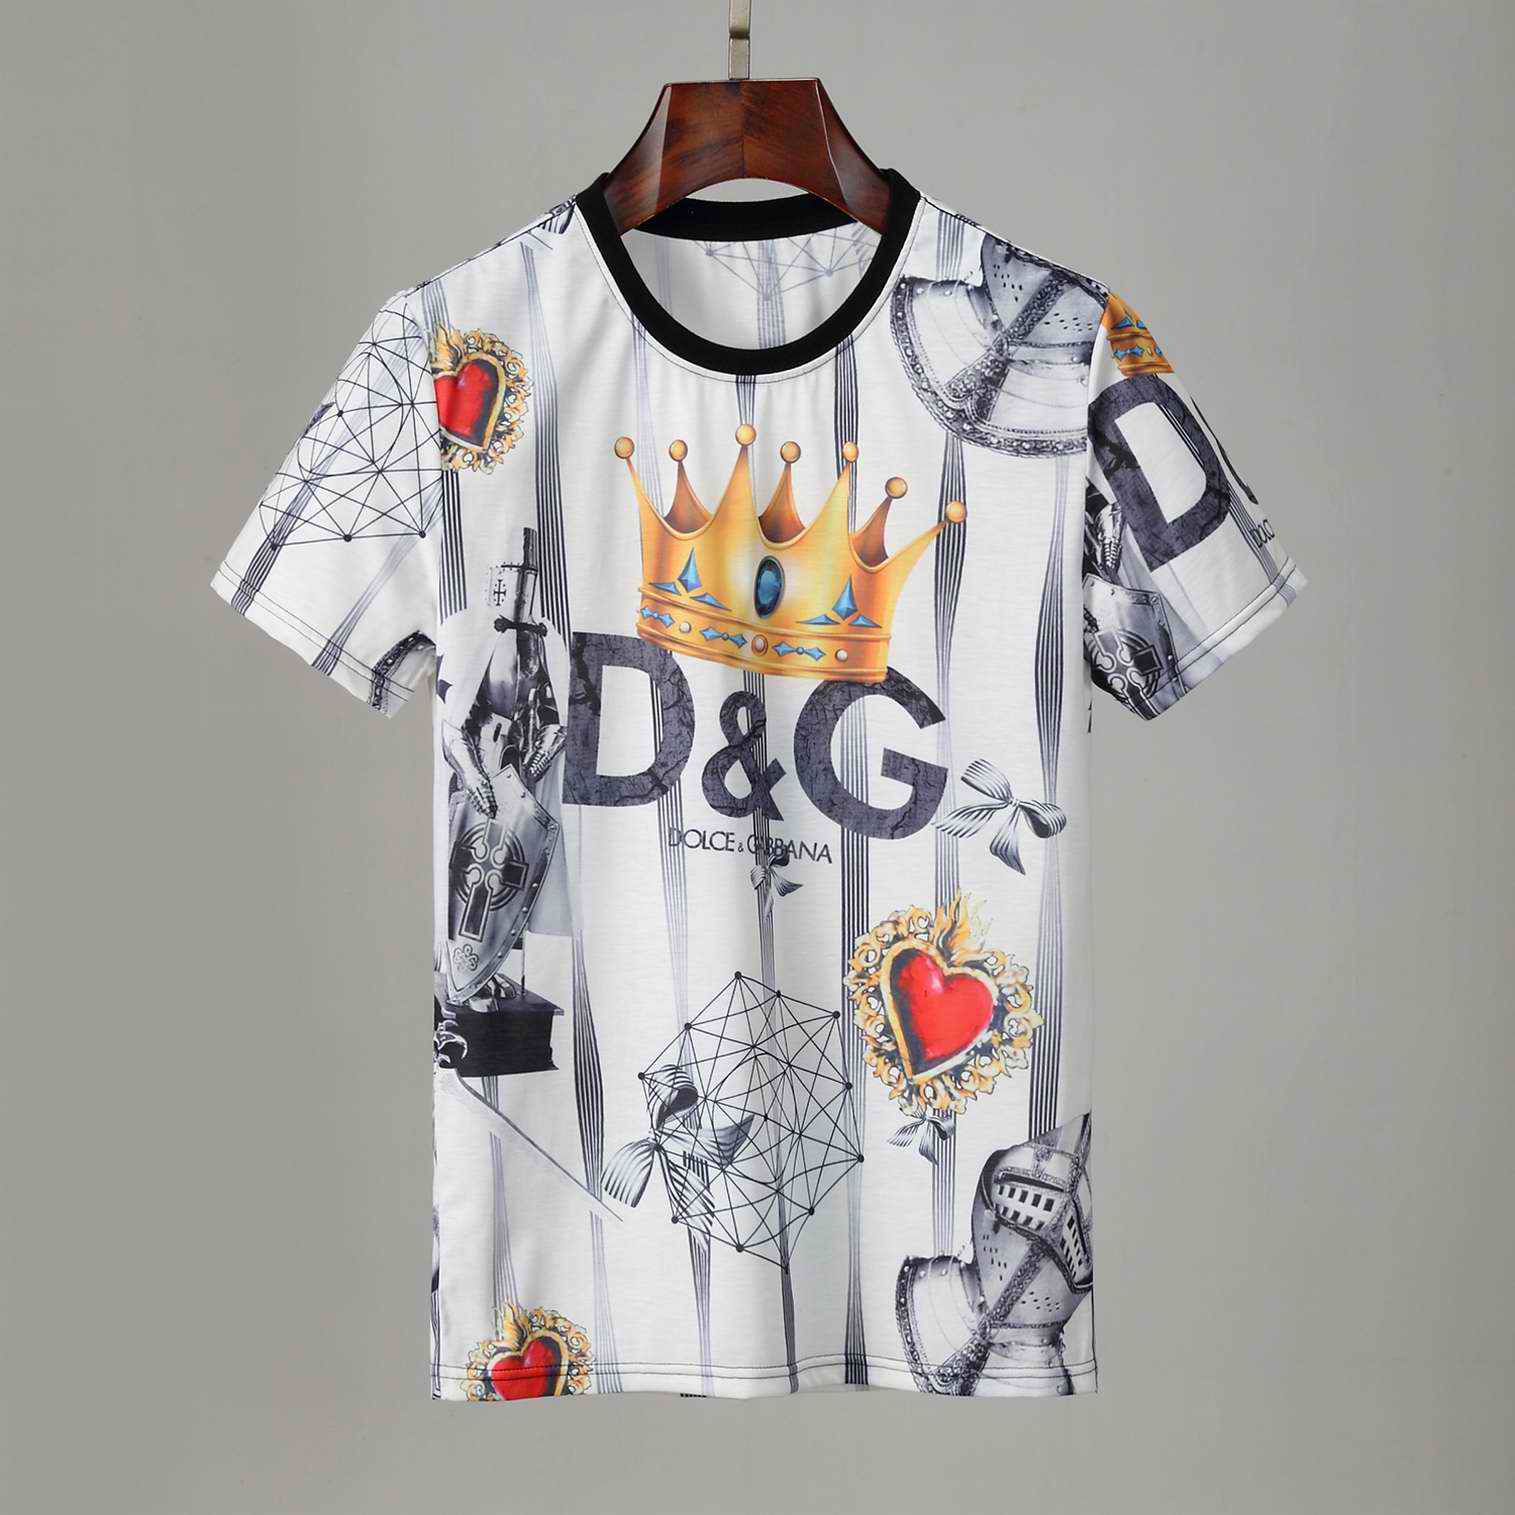  D&G Shirts 002